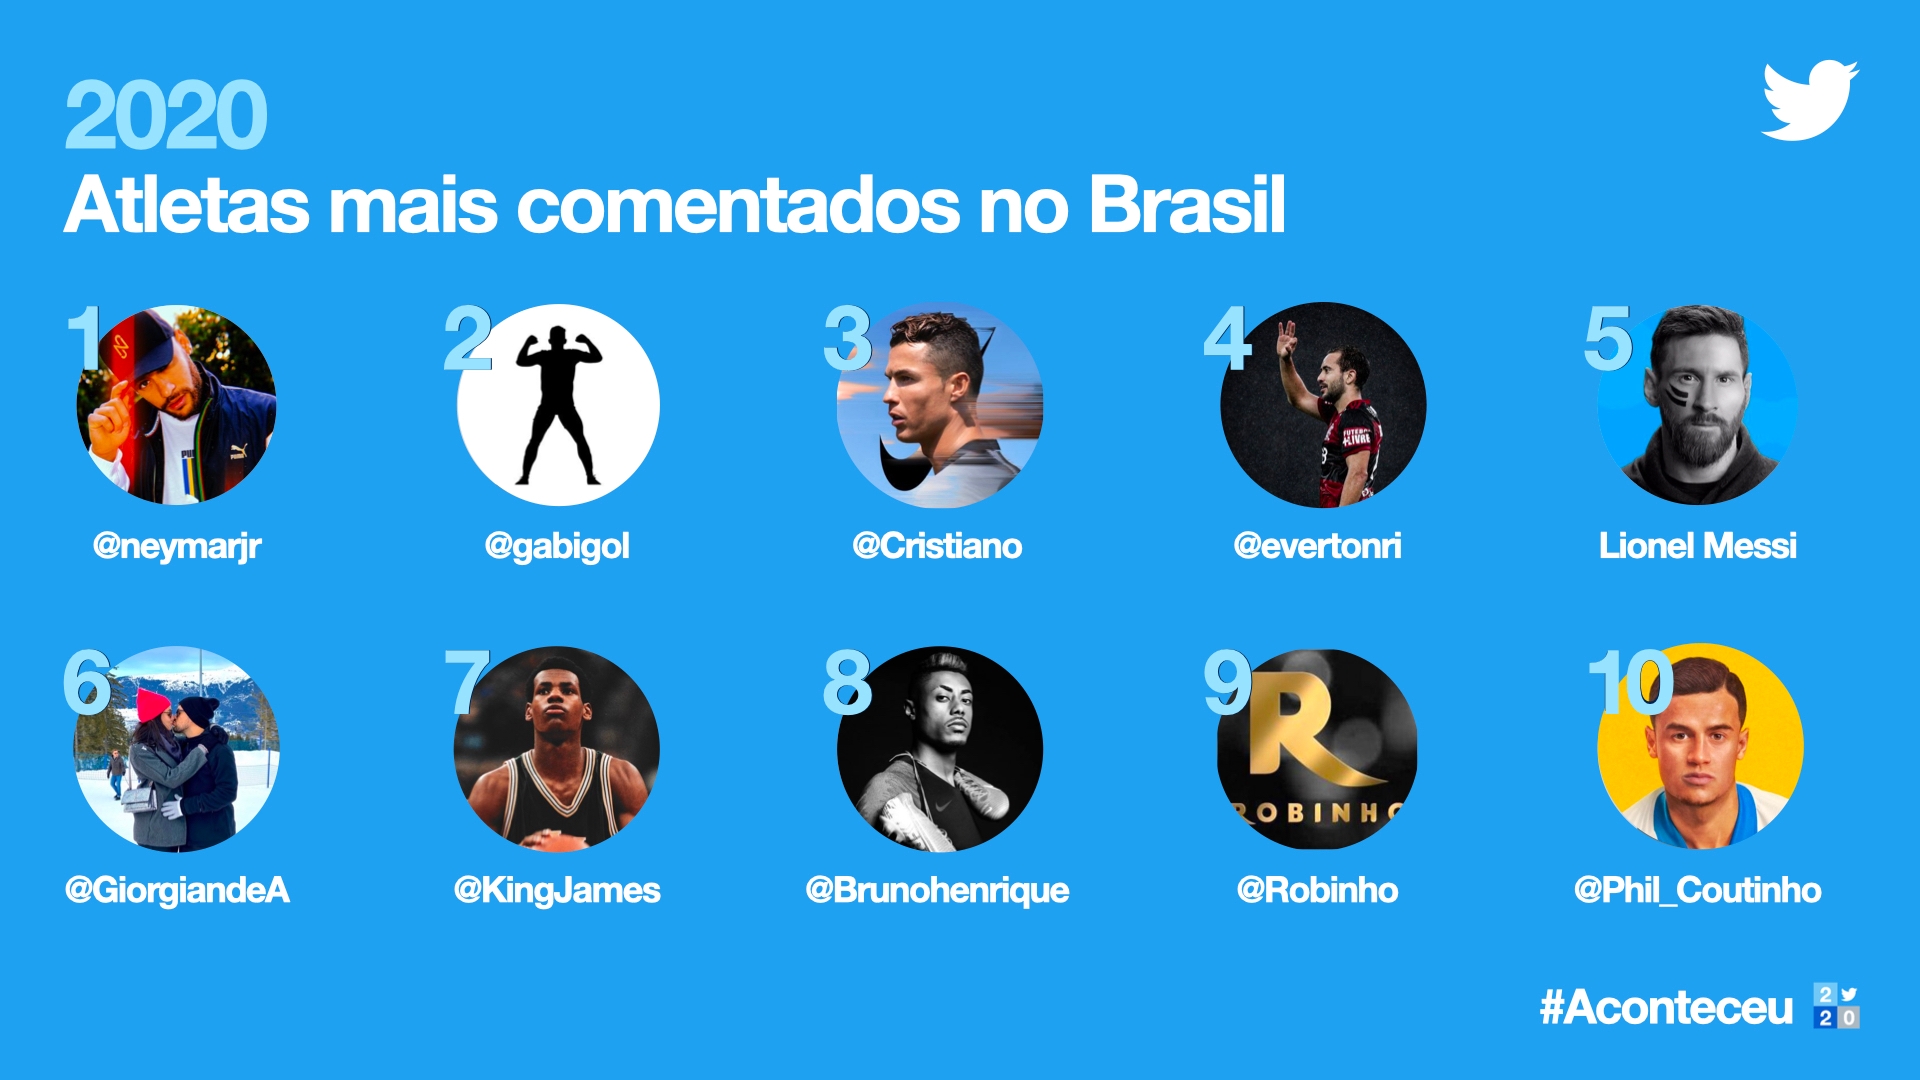 Twitter_Brasil